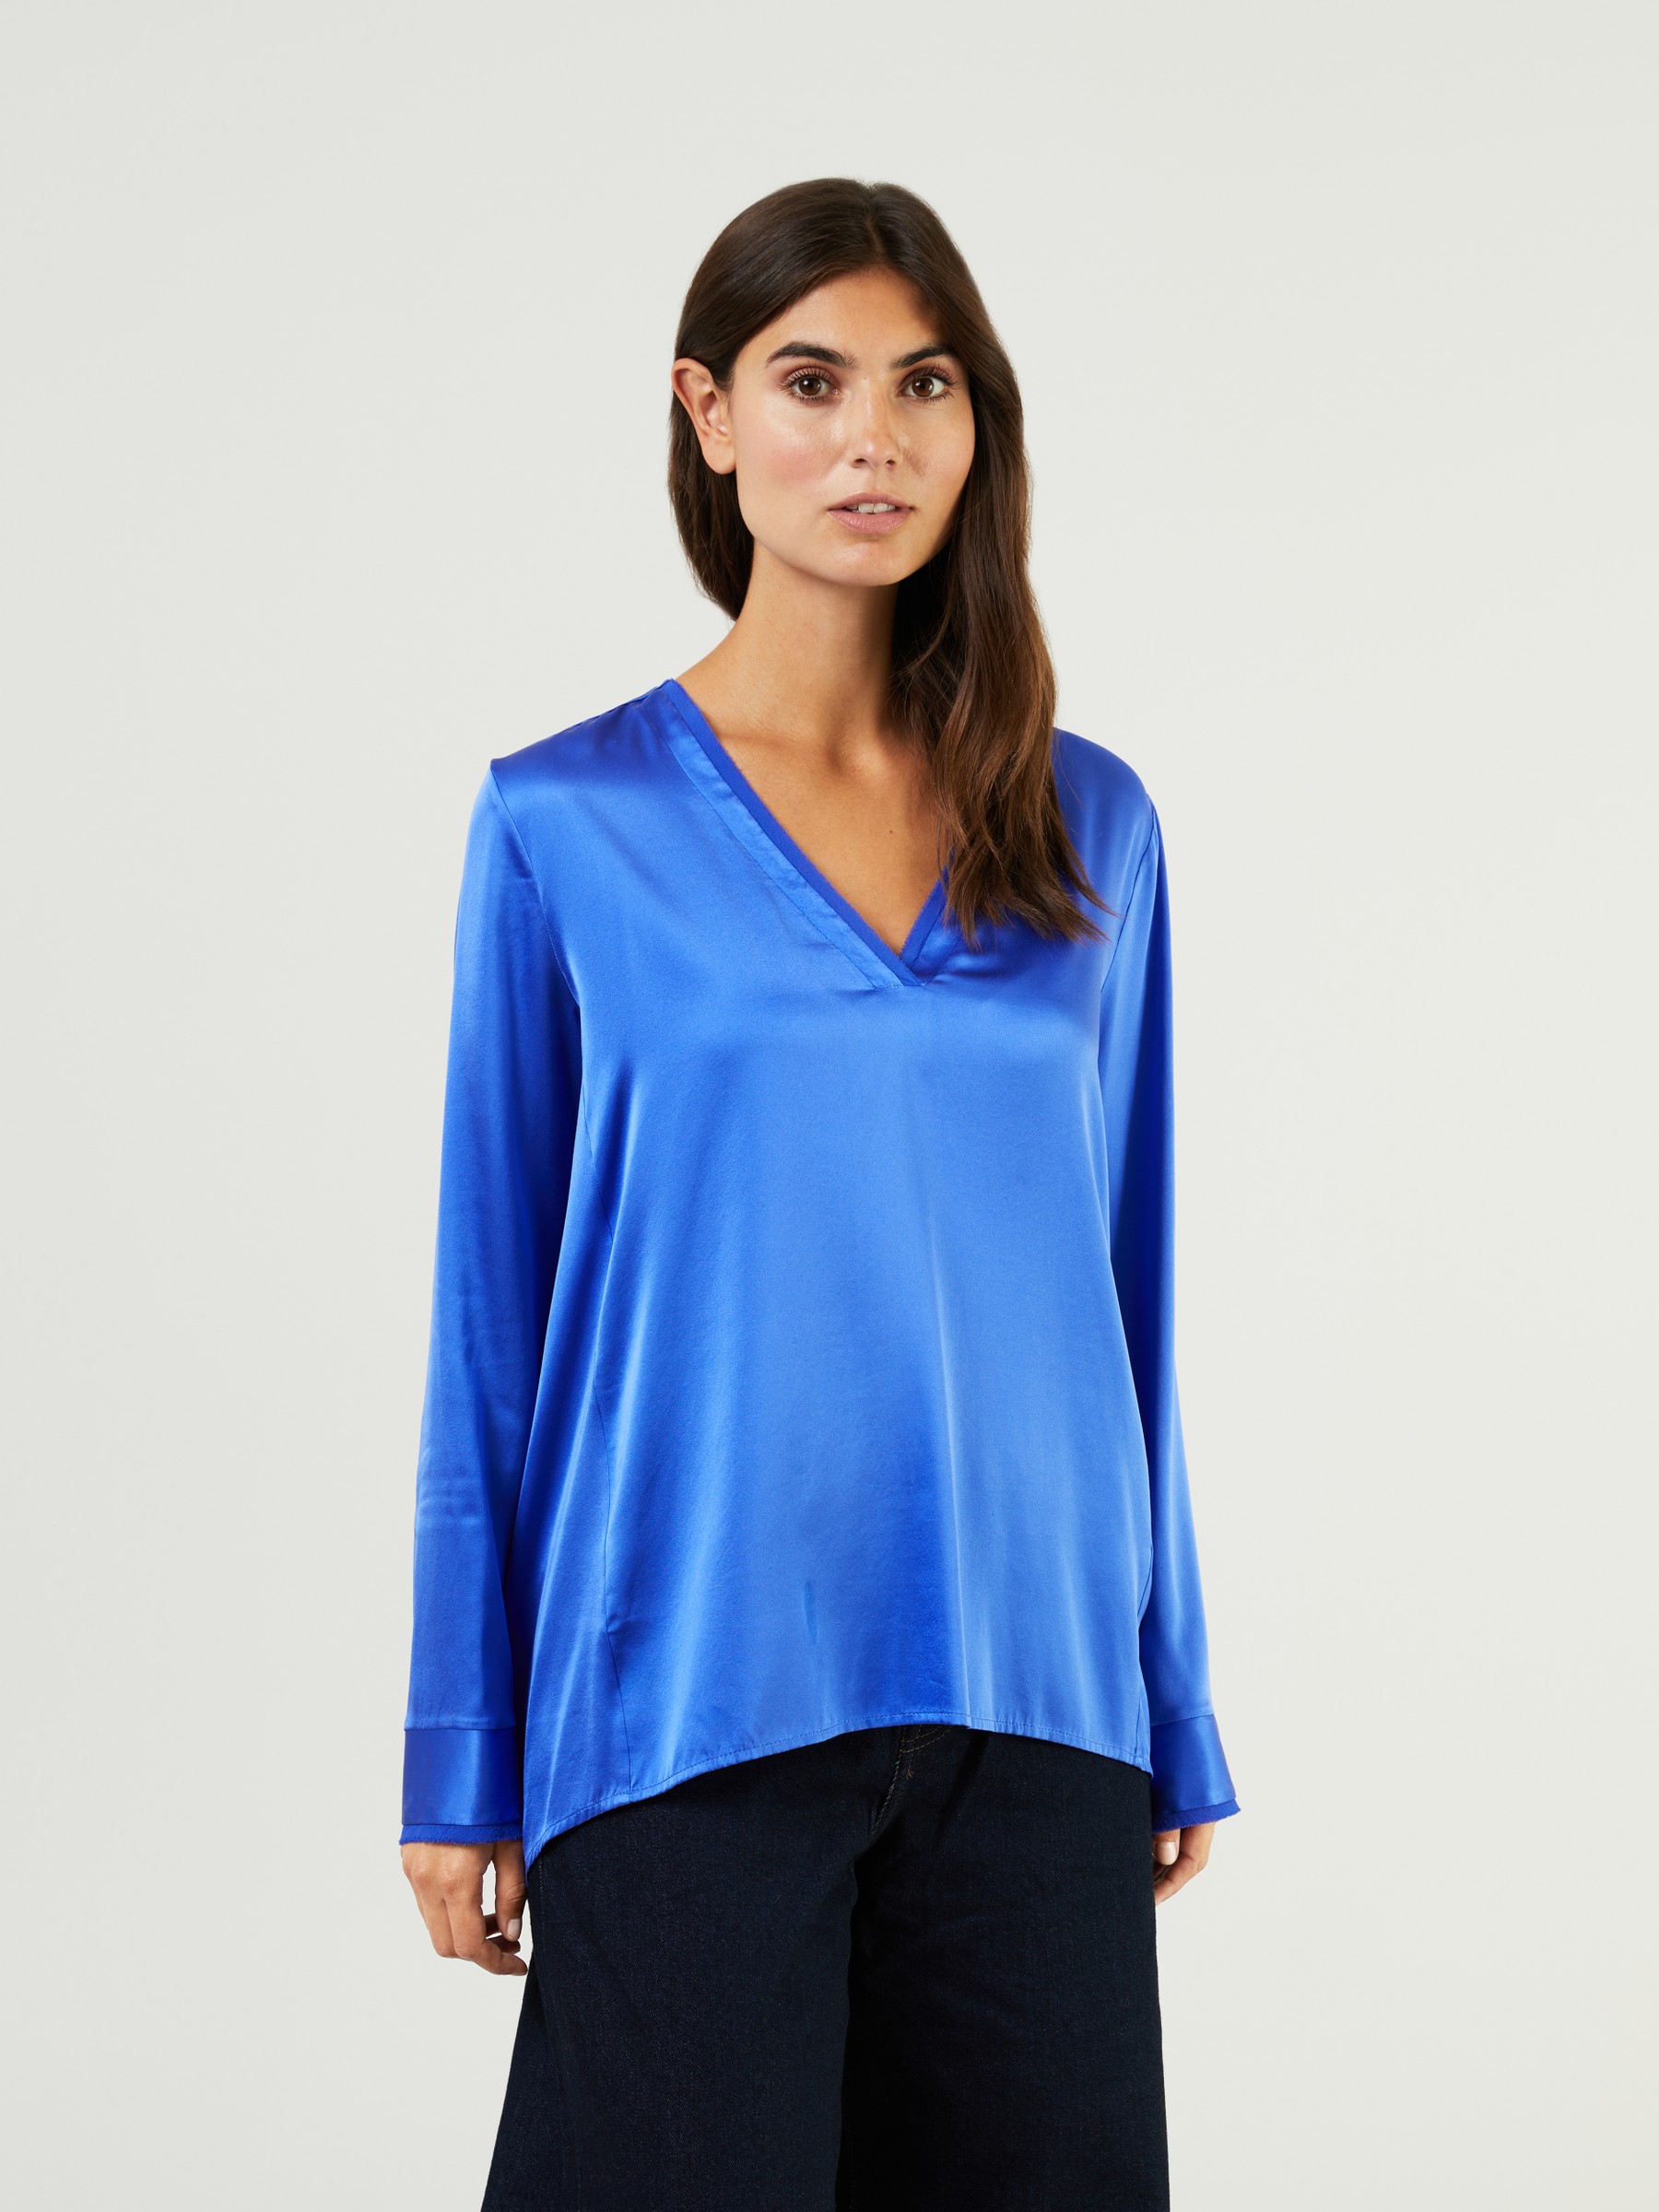 Her Shirt Synthetik Seiden-Bluse Hestia Marineblau in Blau Damen Bekleidung Oberteile Blusen 